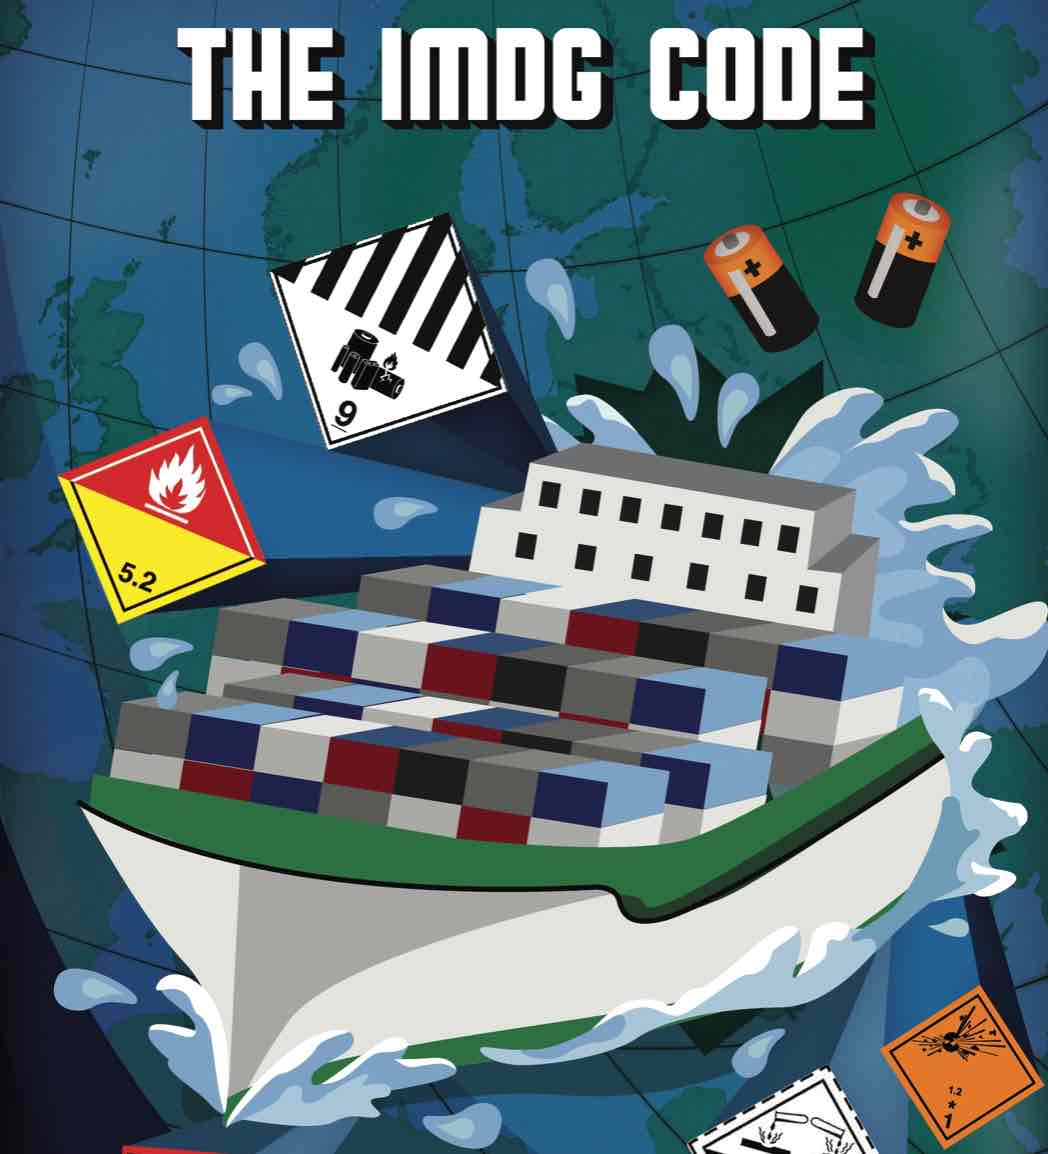 The Imdg Code Essentials E Learning Ecostar Dangerous Goods